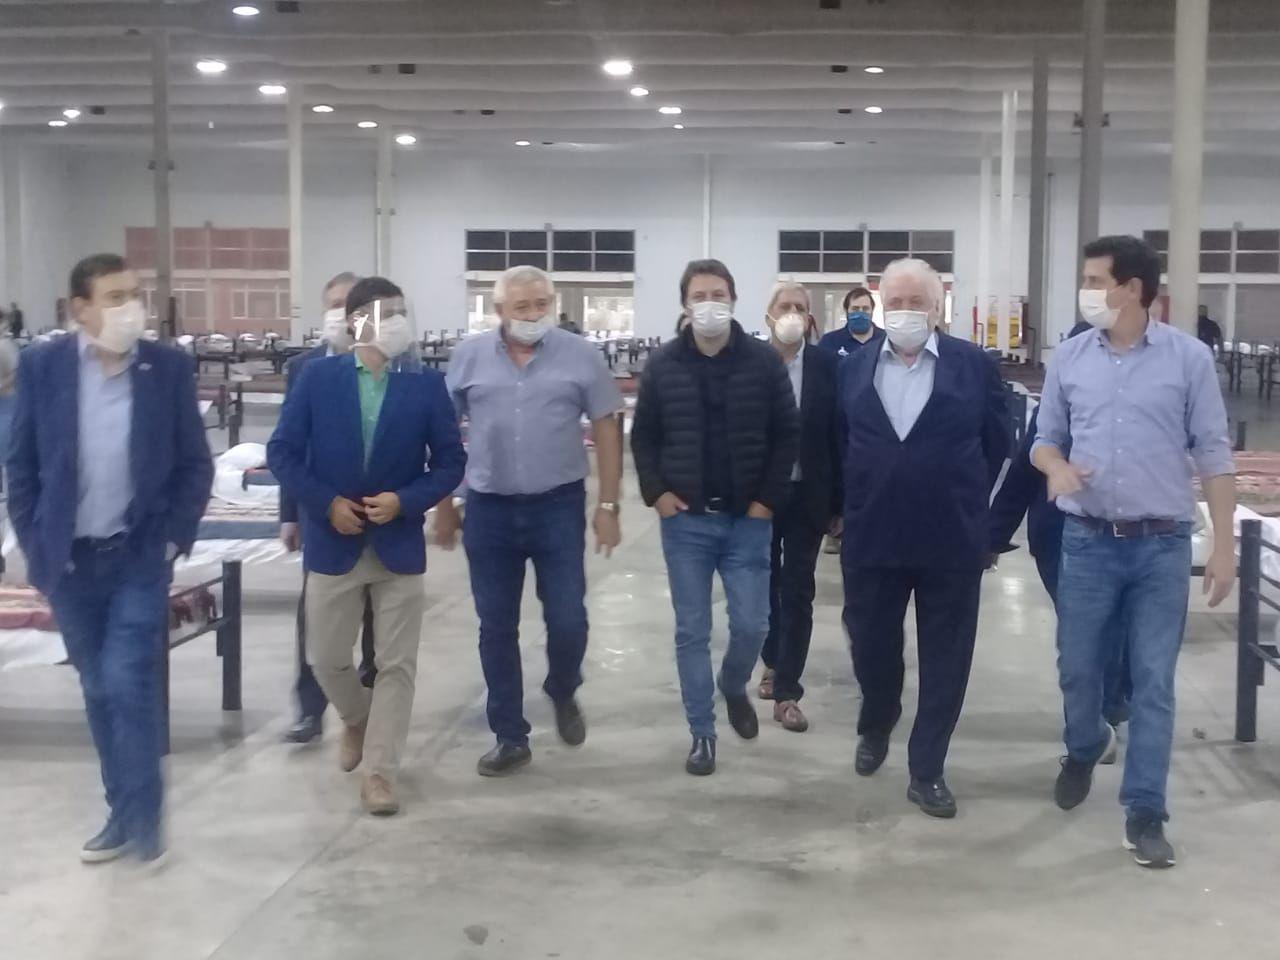 VIDEO  Gineacutes Gonzaacutelez recorrioacute las instalaciones del Nodo Tecnoloacutegico junto a Gerardo Zamora